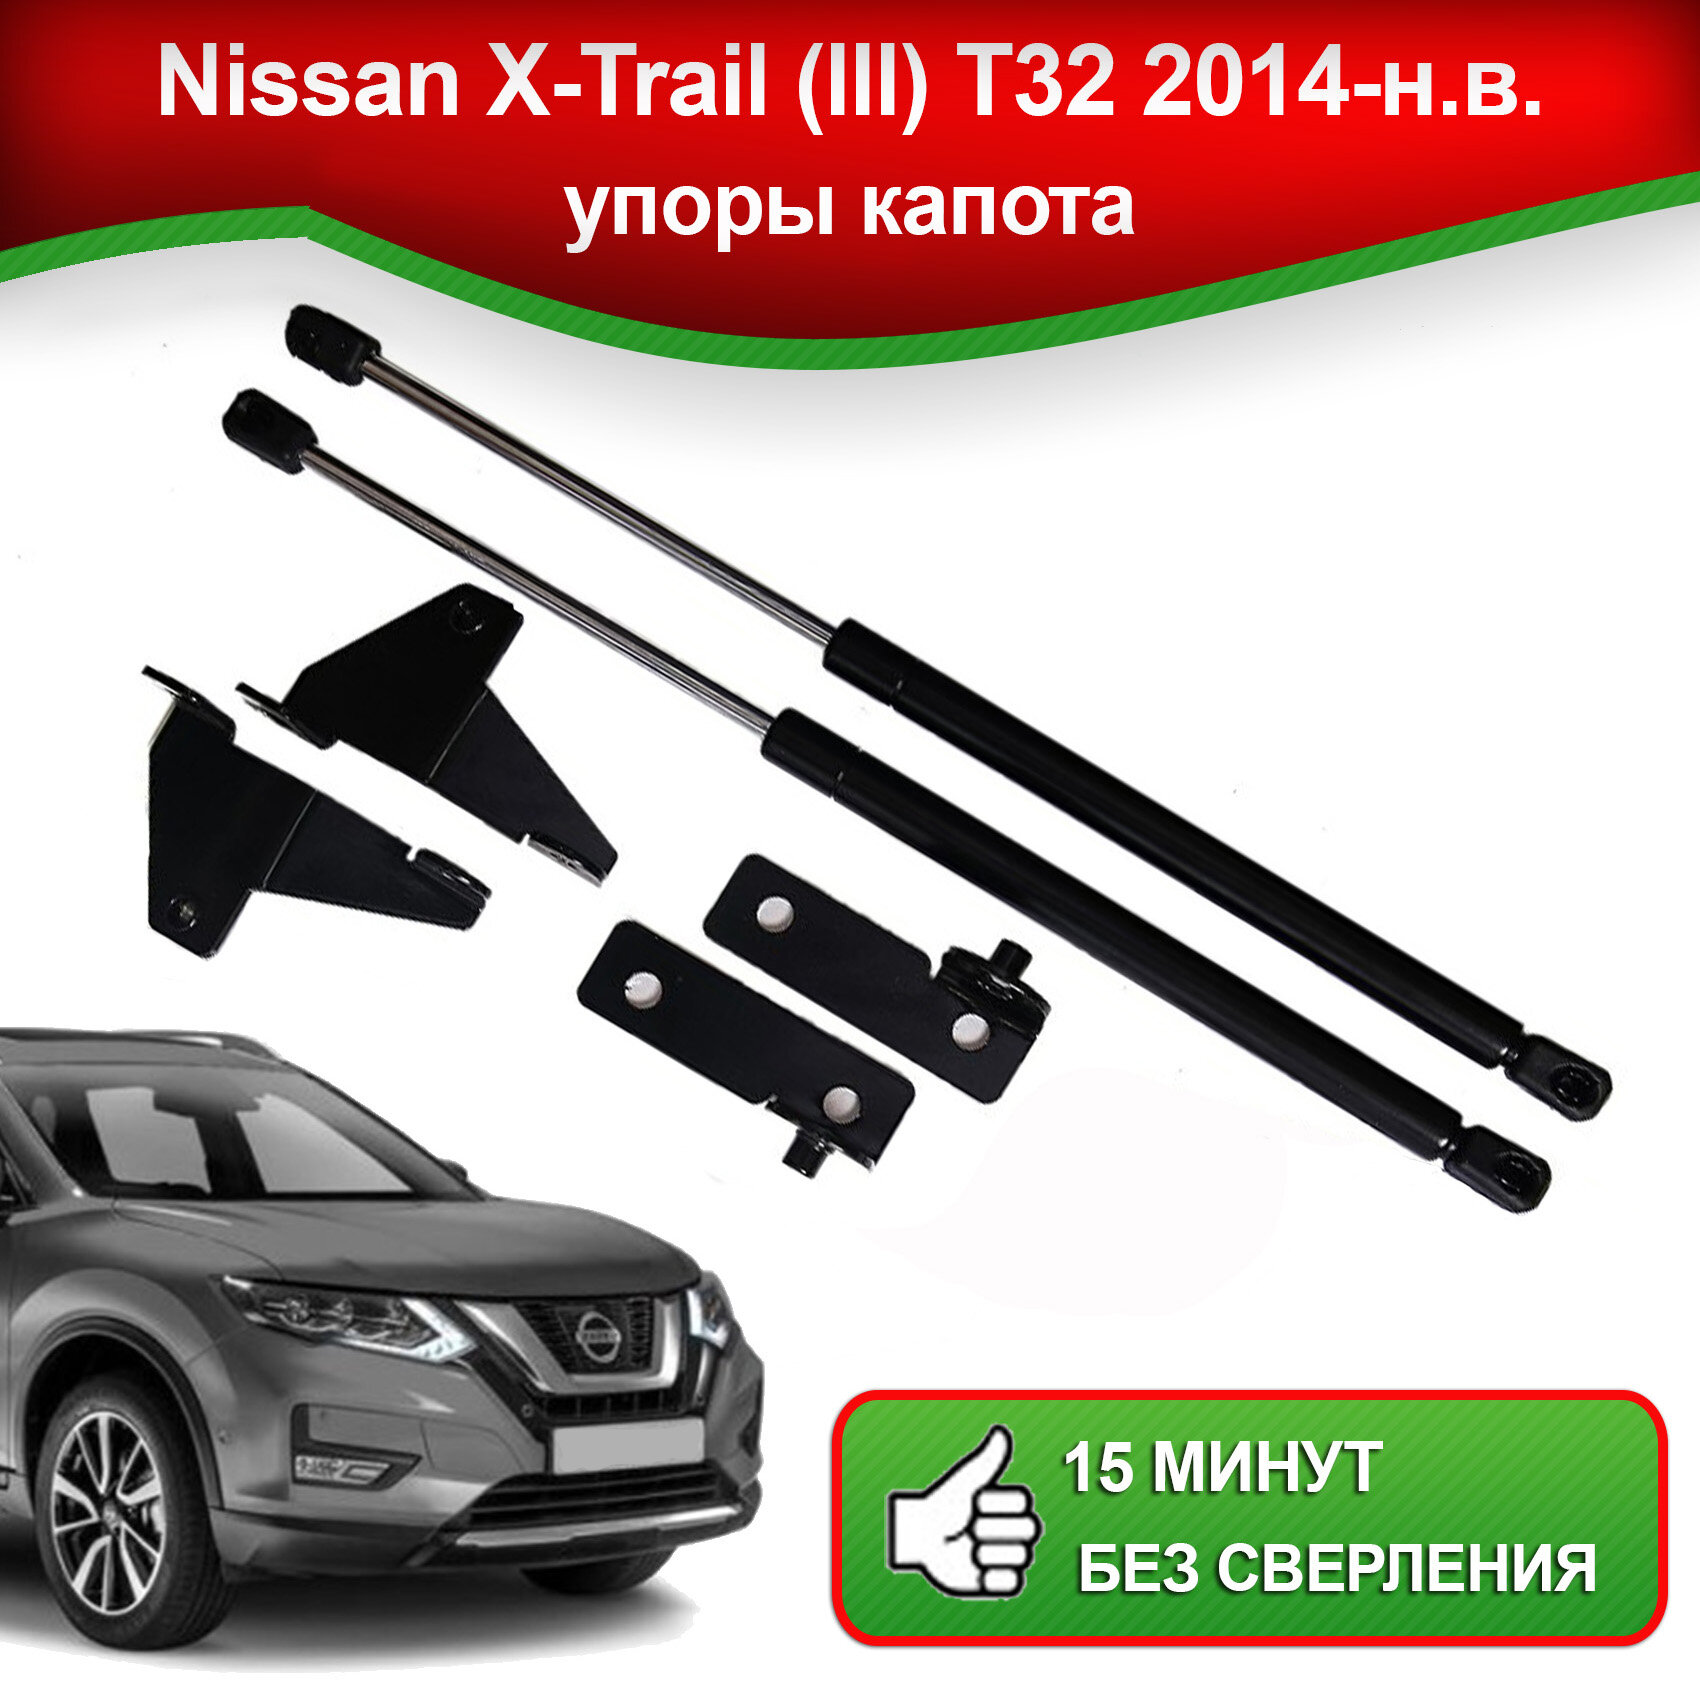 Упоры капота для Nissan X-Trail (lll) T32 2014-наст. время / Газовые амортизаторы для капота Ниссан Икс Трейл Т32